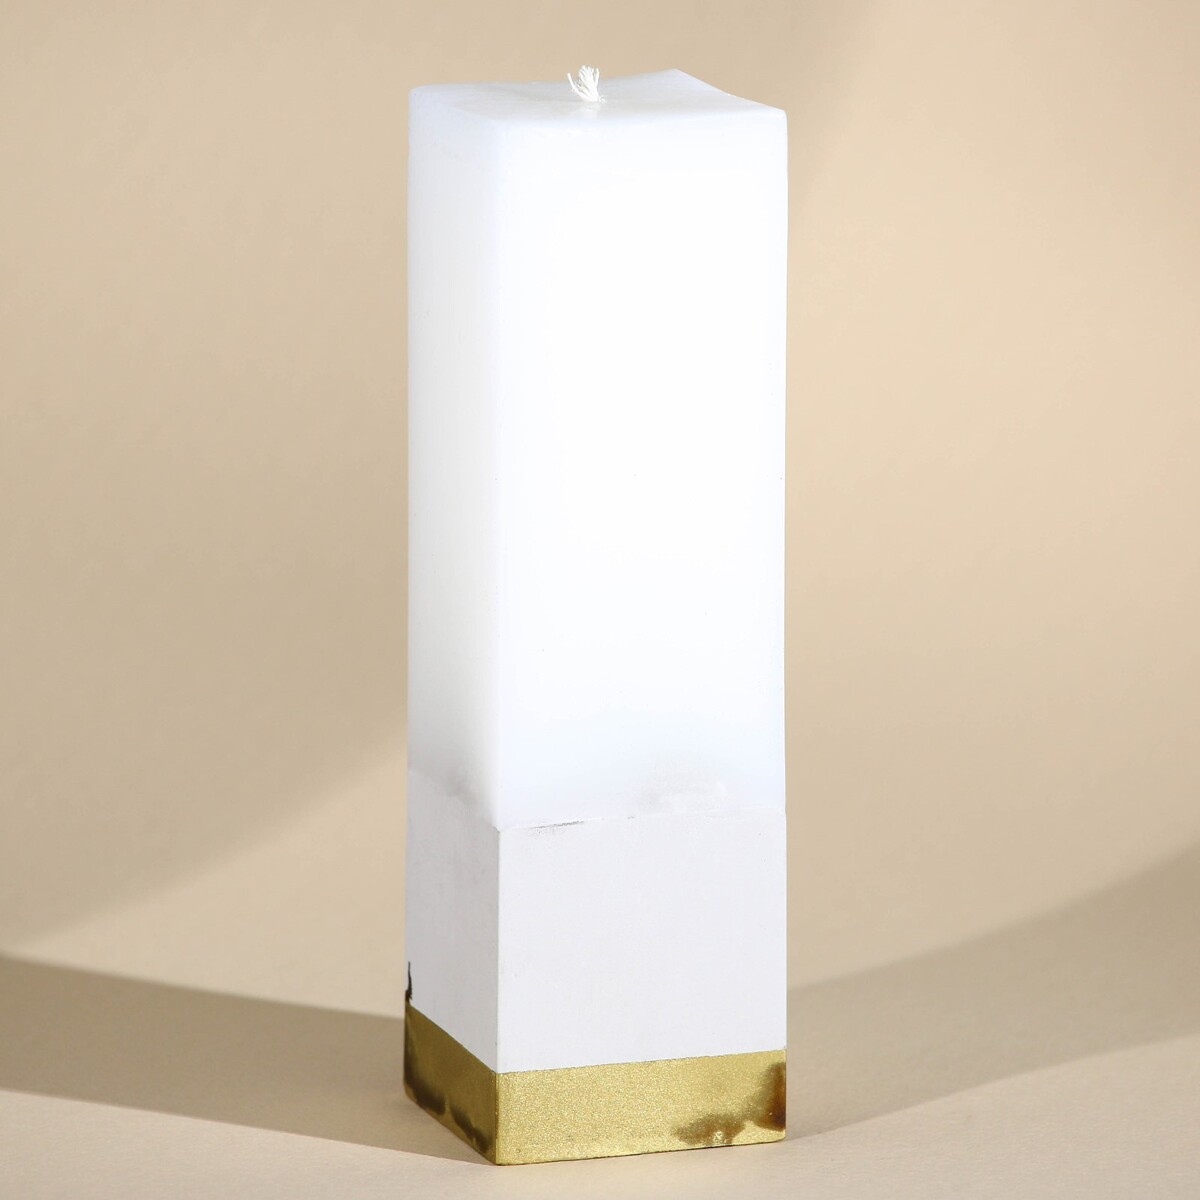 Свеча интерьерная белая с бетоном, низ золото, 5 х 5 х17,5 см свеча античная 2 2х26 см белая 2 ч